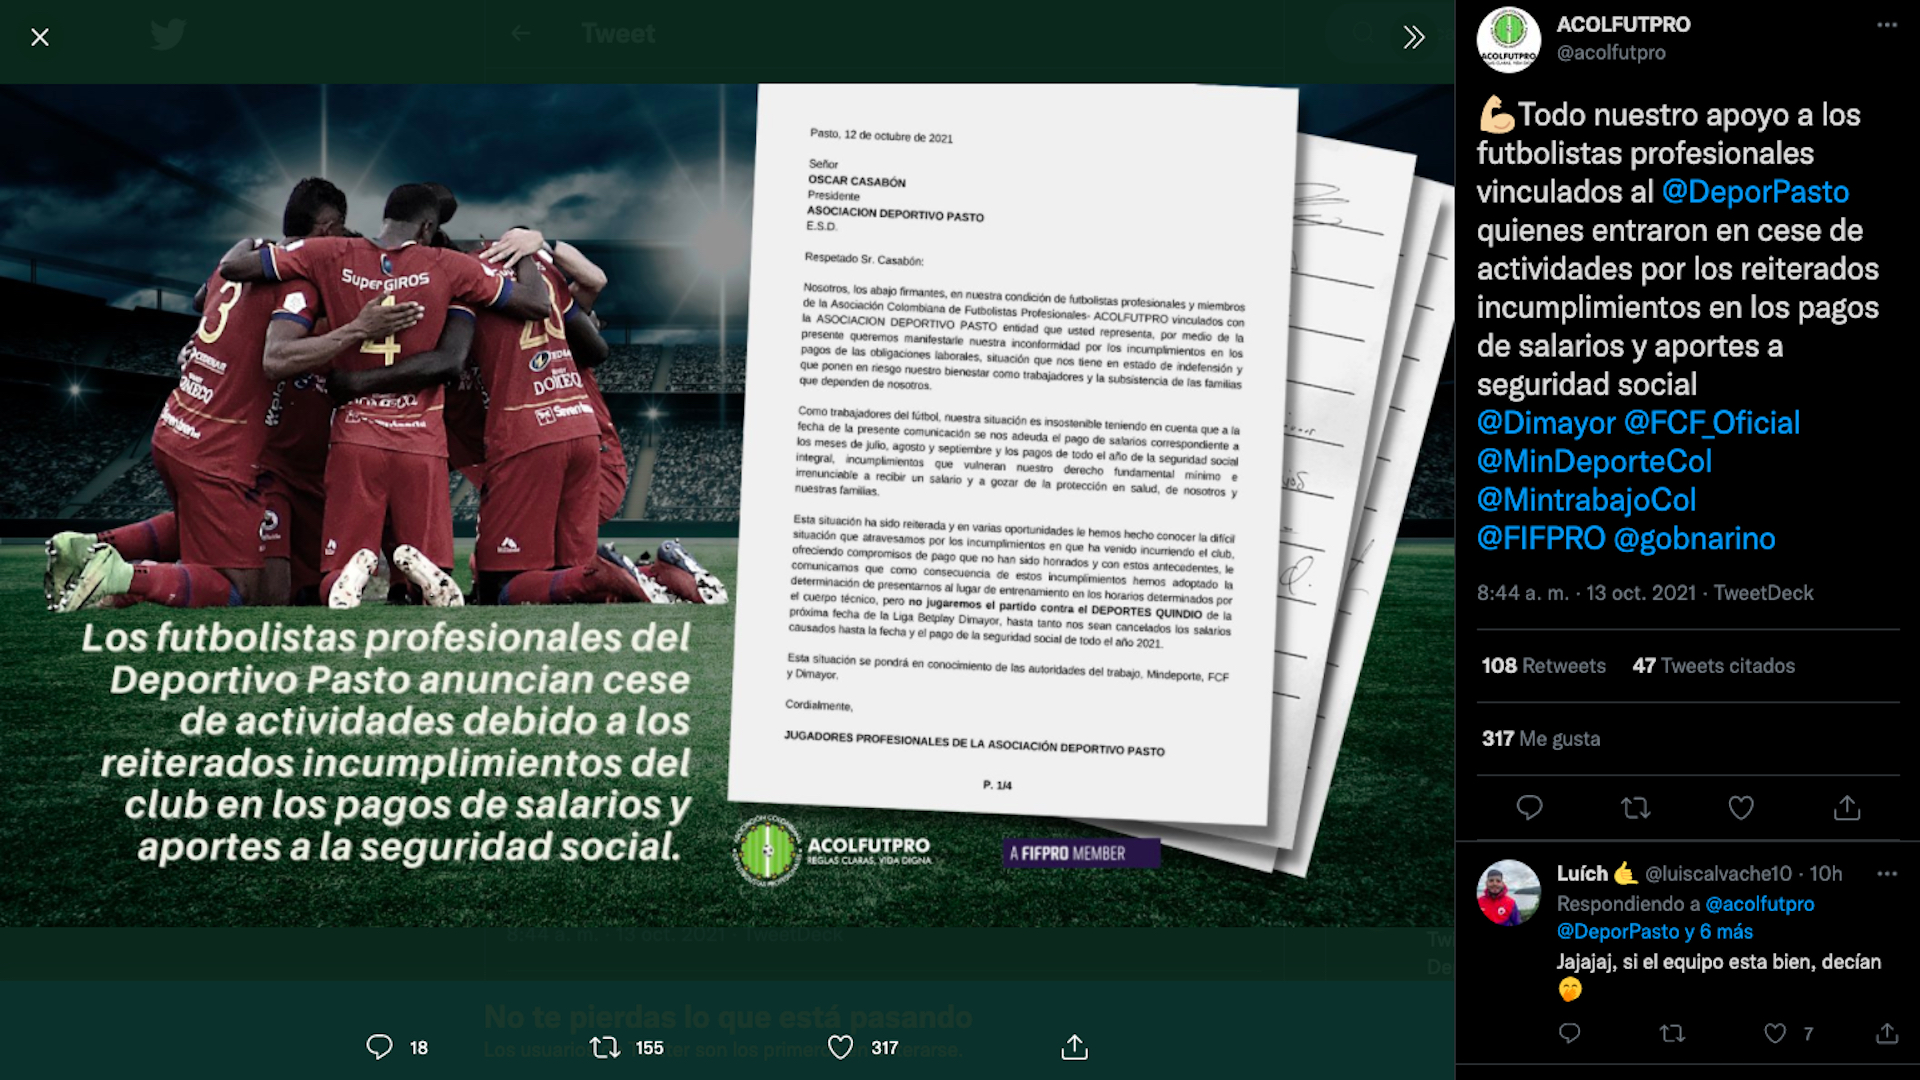 Acolfutpro respaldó a los futbolistas de Deportivo Pasto que se rehúsan a jugar ante el adeudamiento de salarios y pagos de seguridad social / (Twitter: @acolfutpro)